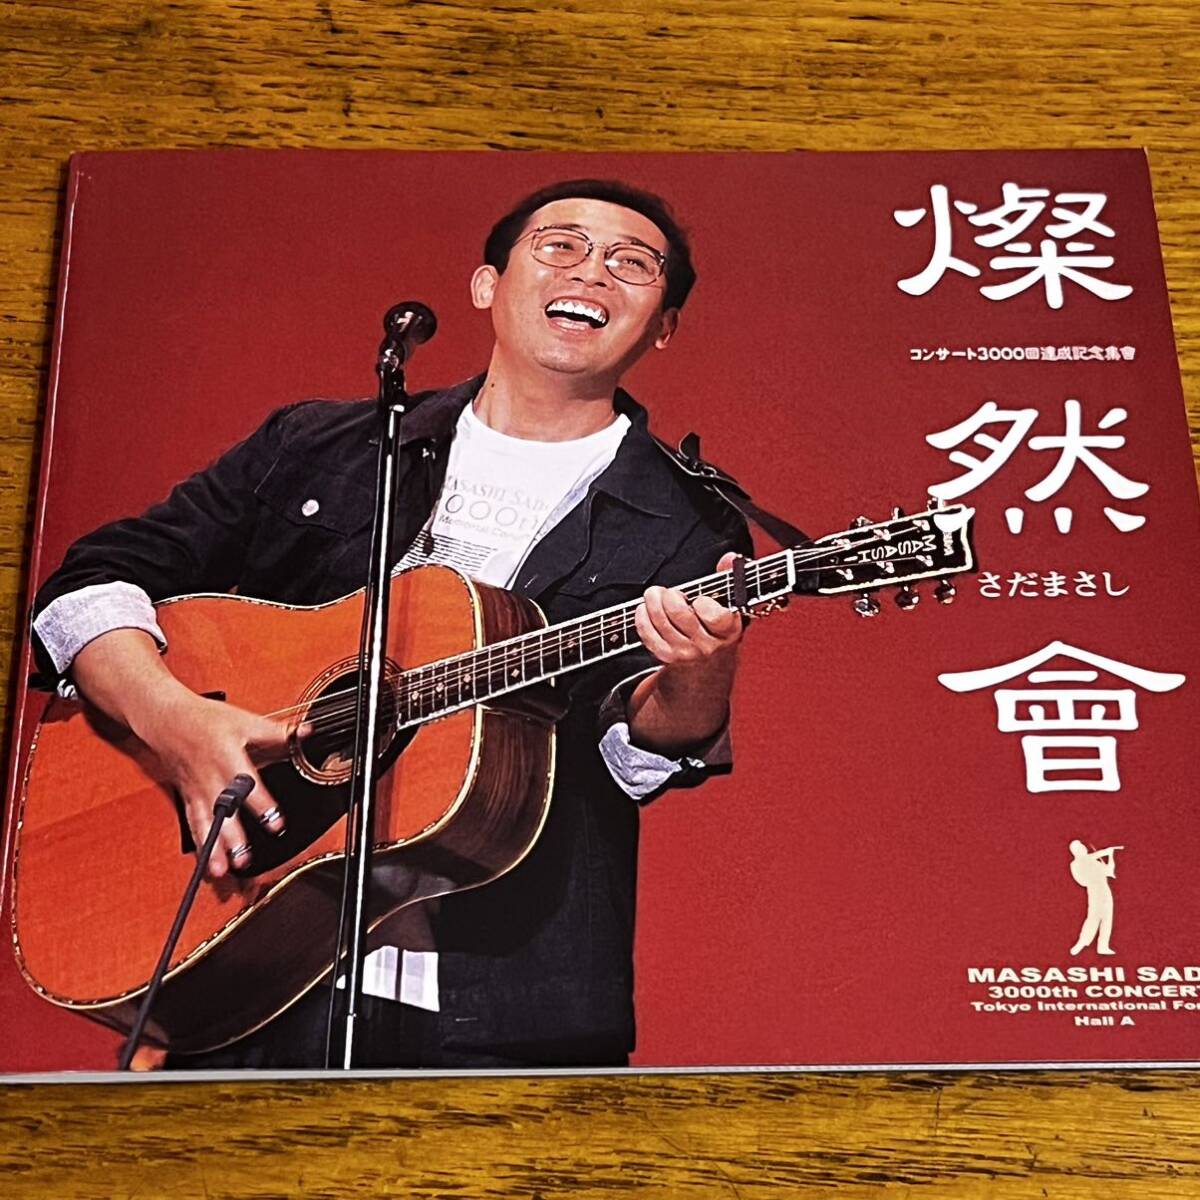 美品 CD 3枚組 さだまさし 燦然會 東京国際フォーラム コンサート3000回達成記念集會_画像7